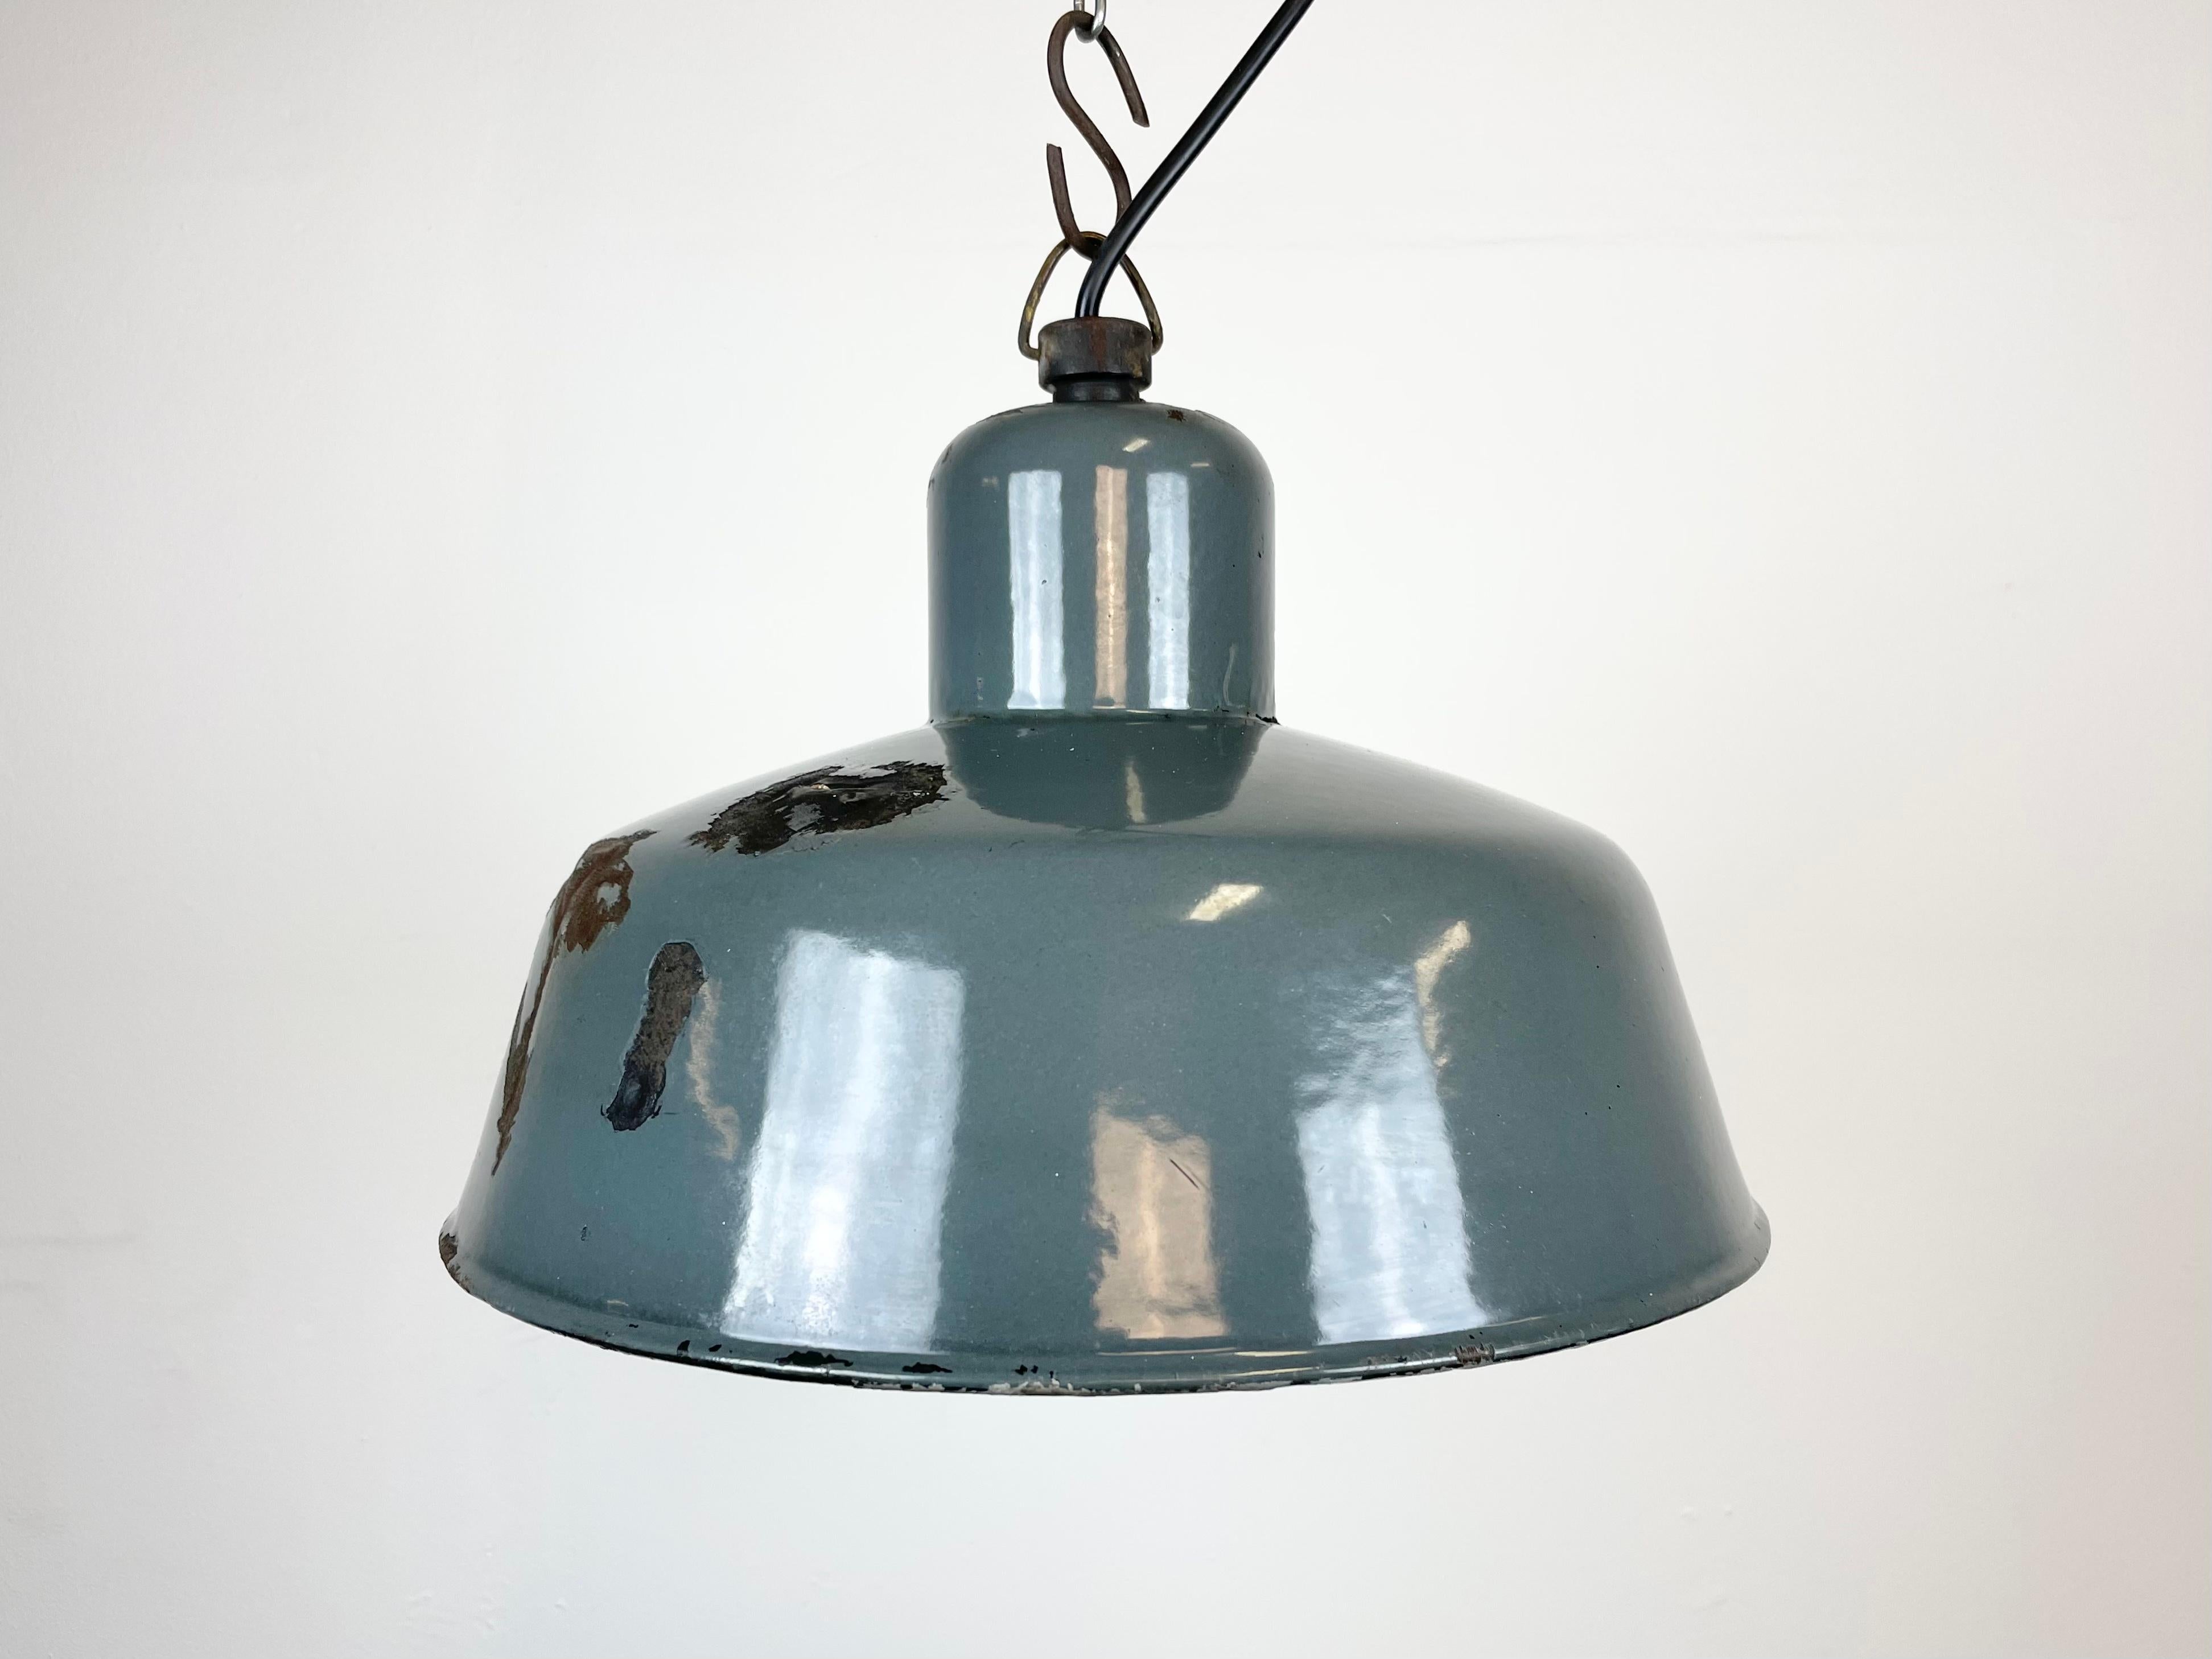 Lampe pendante industrielle en émail gris fabriquée par Siemens en Allemagne dans les années 1950. Émail blanc à l'intérieur de la teinte. Dessus en fer. La douille en porcelaine nécessite des ampoules E 27. Nouveau fil. Entièrement fonctionnel. Le